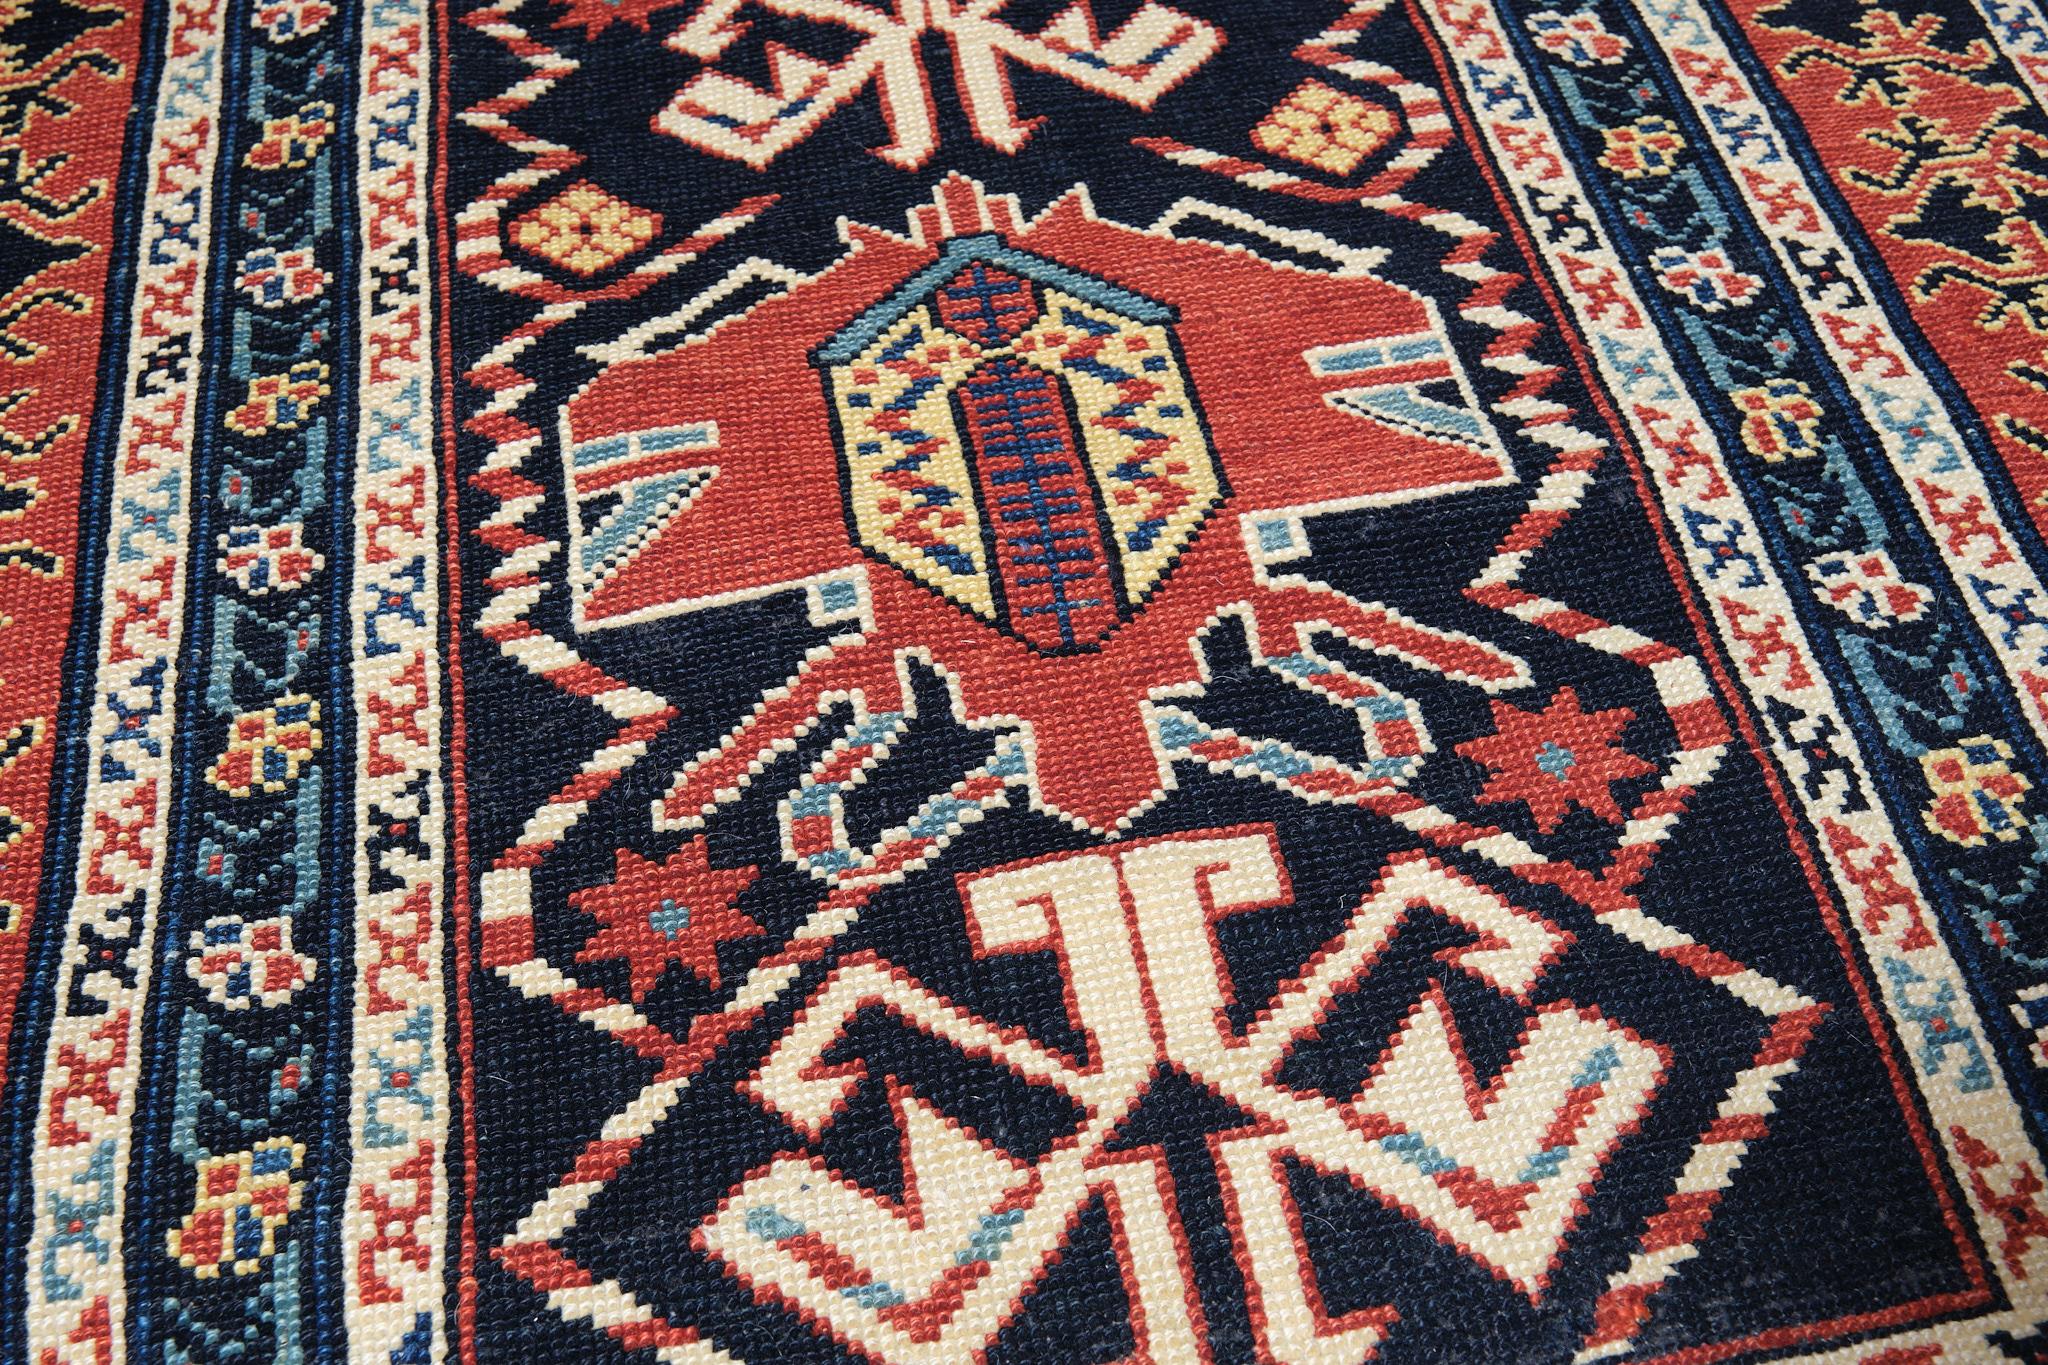 Die Quelle des Teppichs stammt aus dem Buch Oriental Rugs Volume 1 Caucasian, Ian Bennett, Oriental Textile Press, Aberdeen 1993, S. 244. Es handelt sich um einen einzelnen Teppich mit vertikalem Palmettenmuster aus dem frühen 19. Jahrhundert,